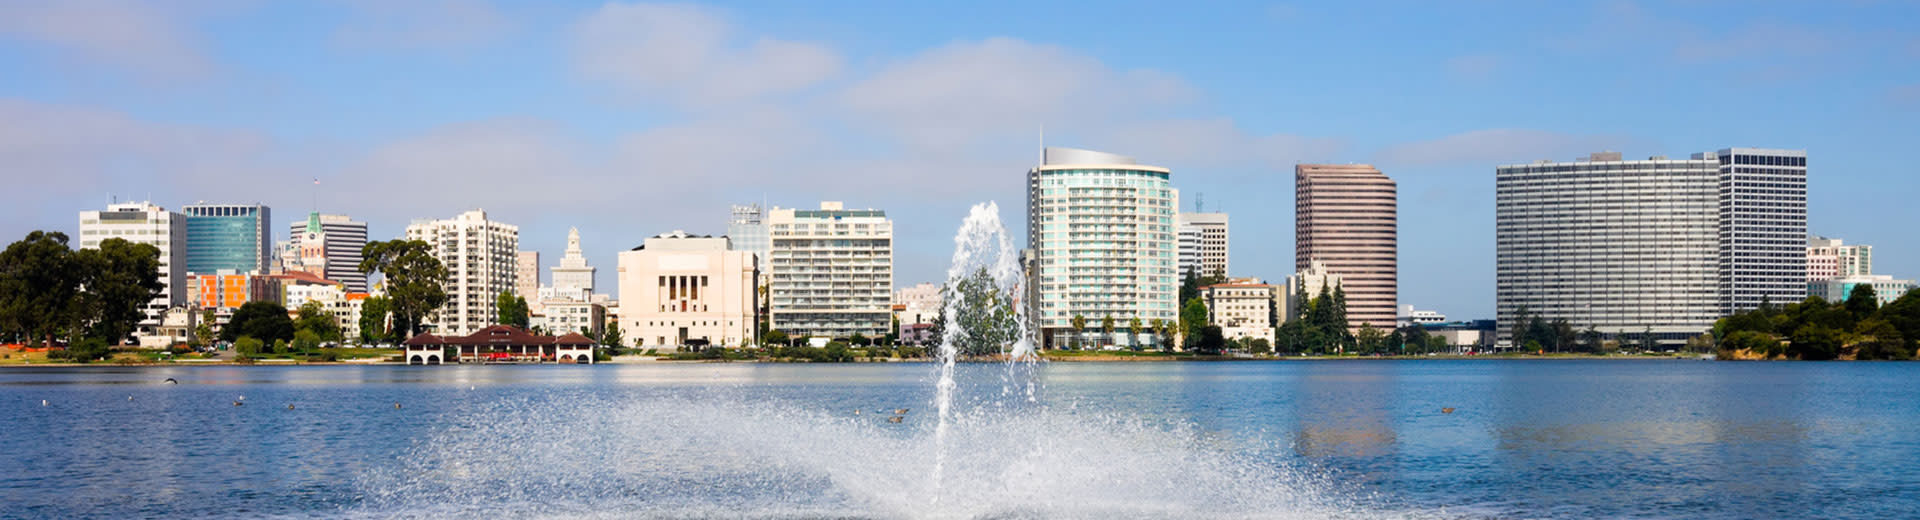 Los rascacielos de Oakland se sientan detrás de un cuerpo de agua, con una fuente en el falso.